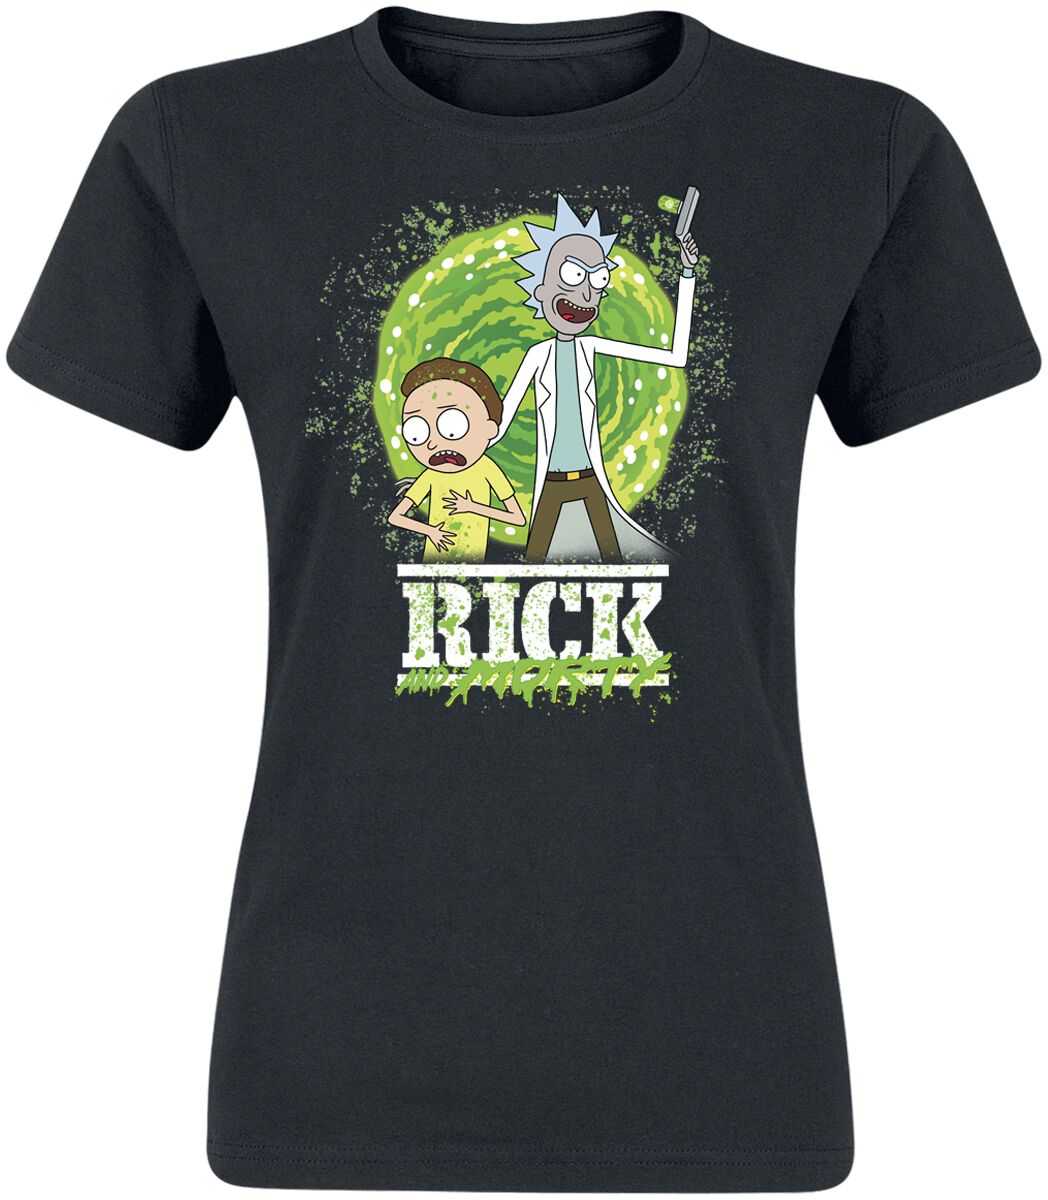 Rick And Morty T-Shirt - Season 6 - S bis XXL - für Damen - Größe XL - schwarz  - EMP exklusives Merchandise!